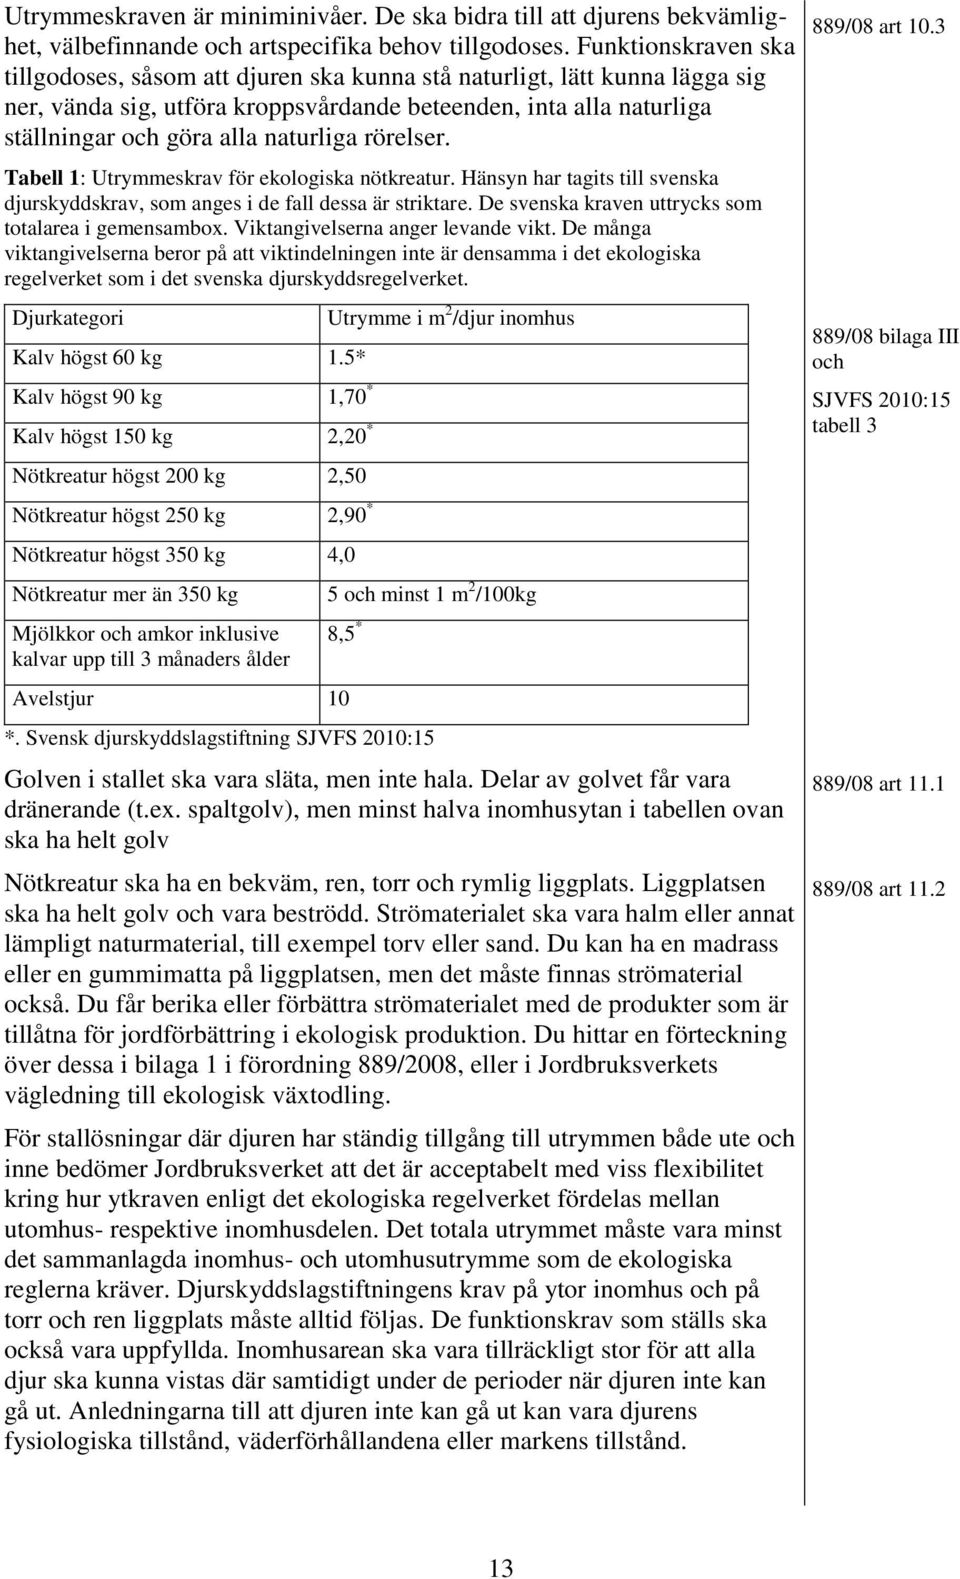 naturliga rörelser. Tabell 1: Utrymmeskrav för ekologiska nötkreatur. Hänsyn har tagits till svenska djurskyddskrav, som anges i de fall dessa är striktare.